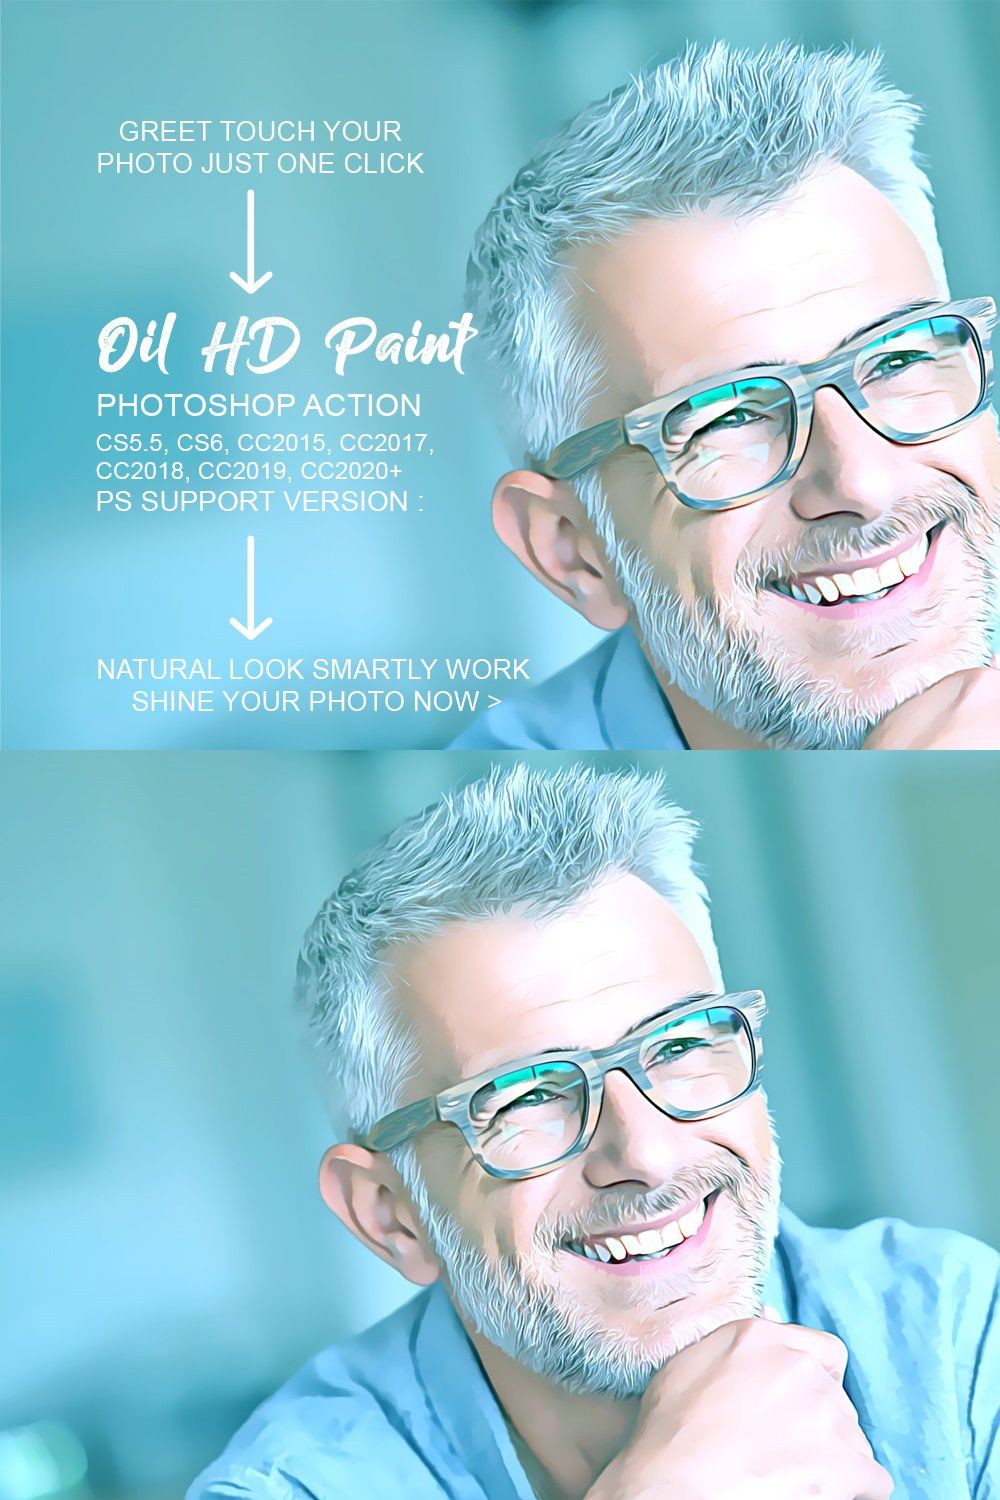 Oil HD Paint Photoshop Action pinterest preview image.